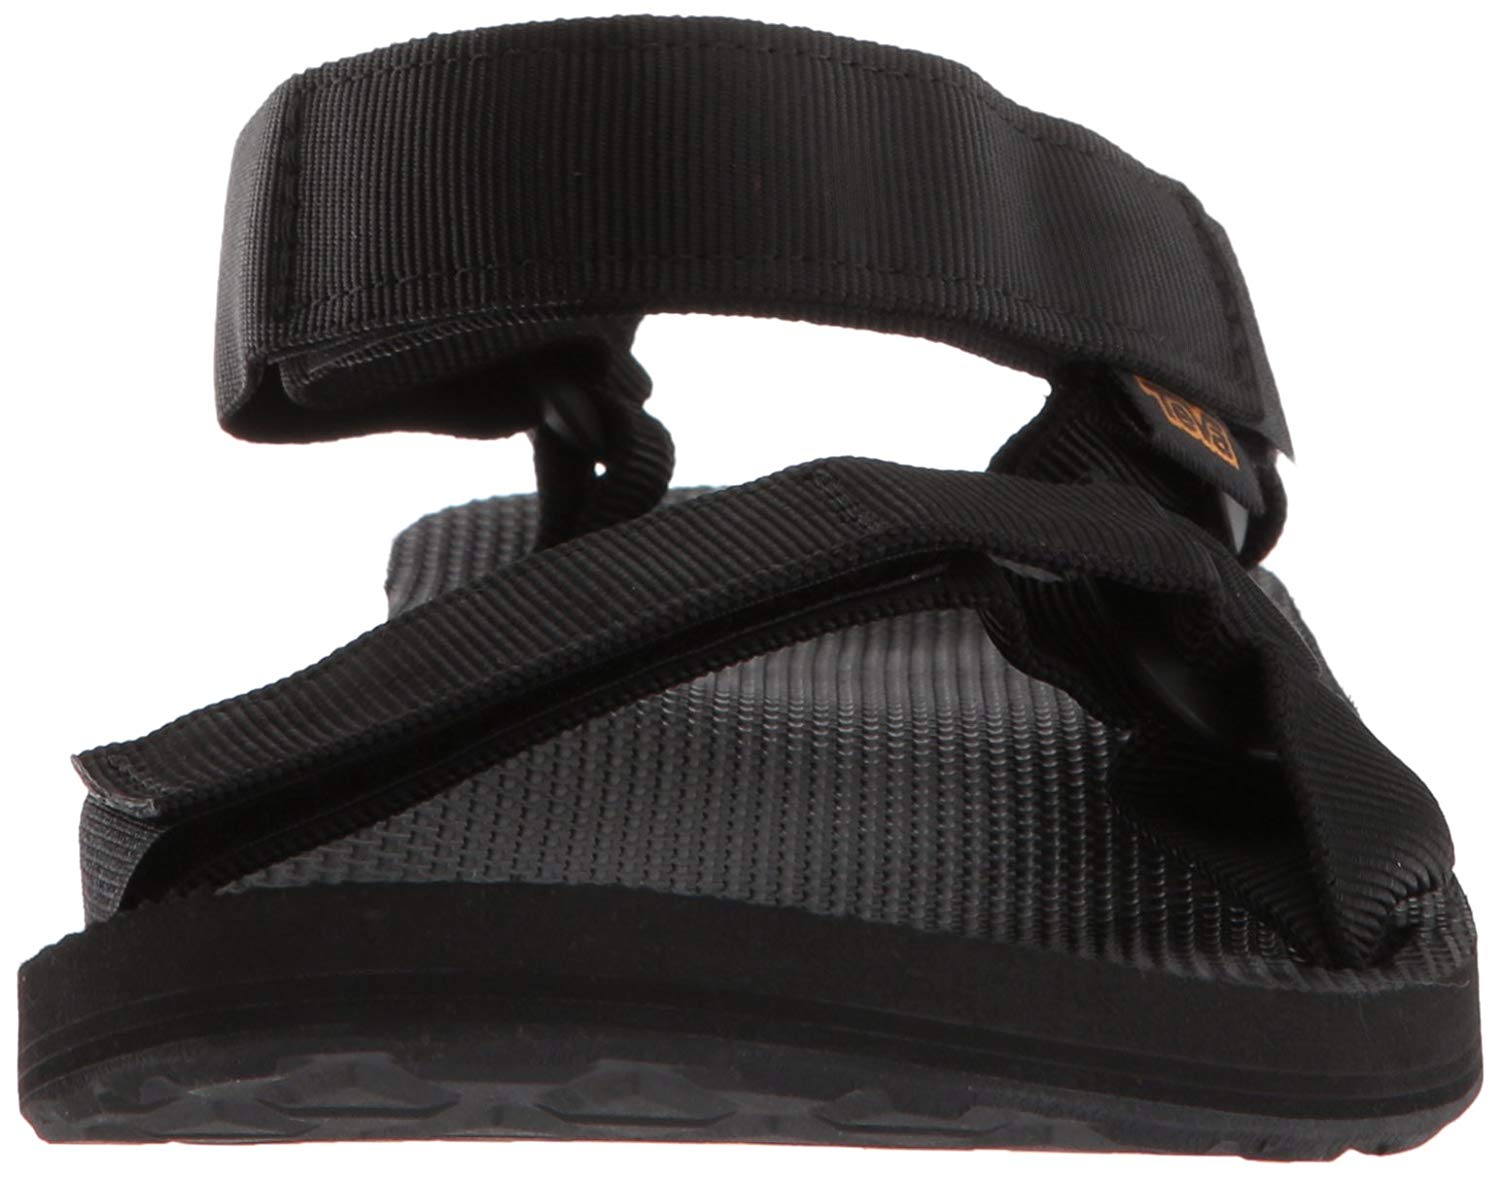 Teva Men's Original Universal Urban Sandal, Black, Size 14.0 l9zn | eBay